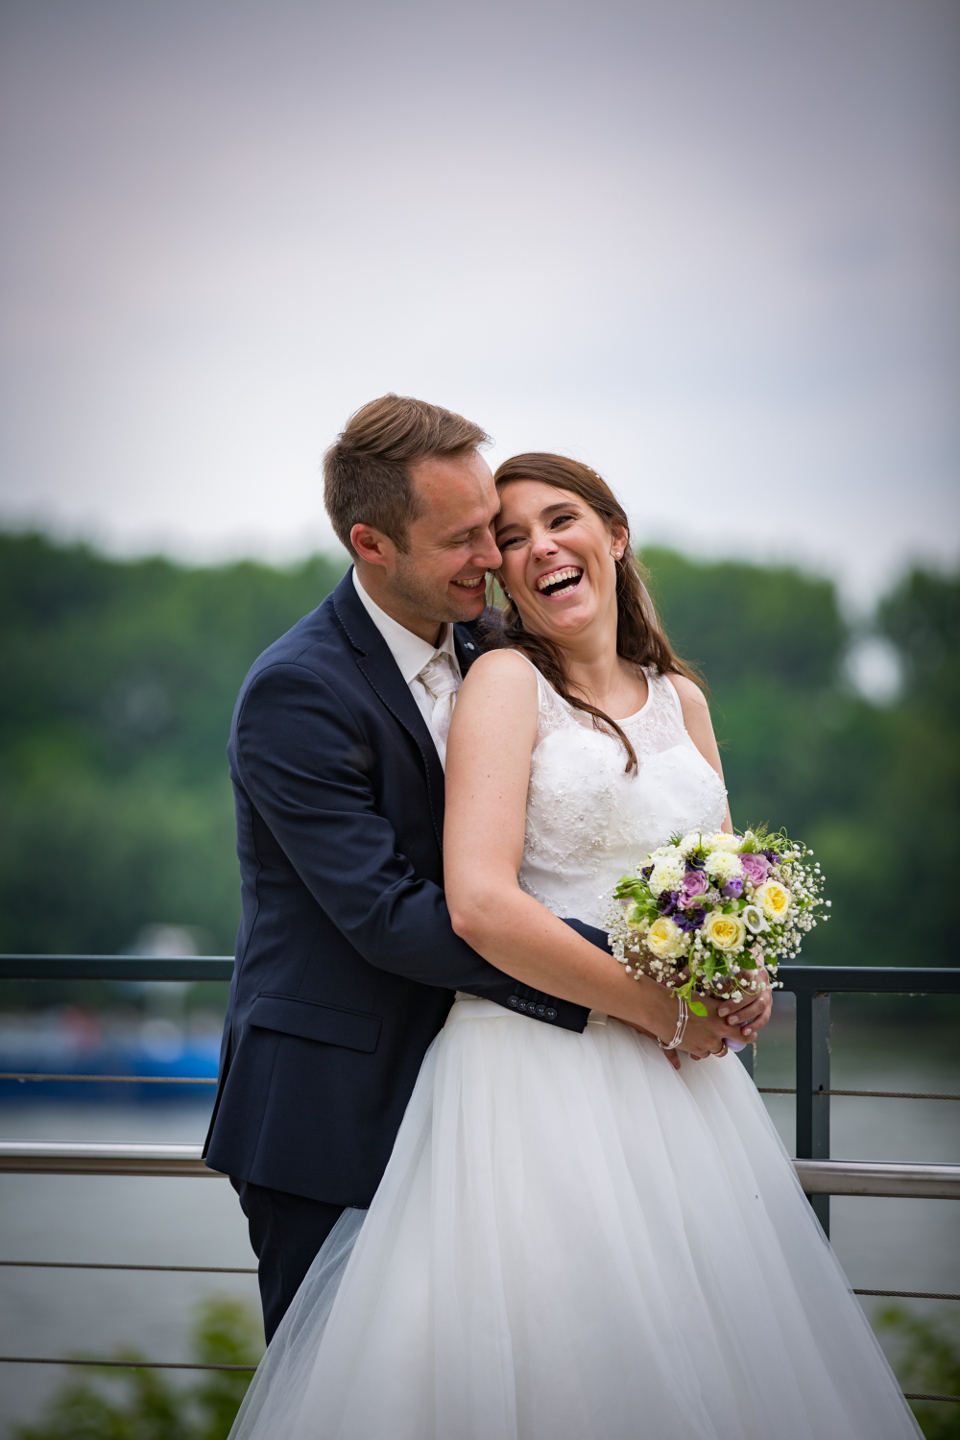 Wunderschönes Hochzeitsfoto auf einer Brücke am Rhein Ufer.